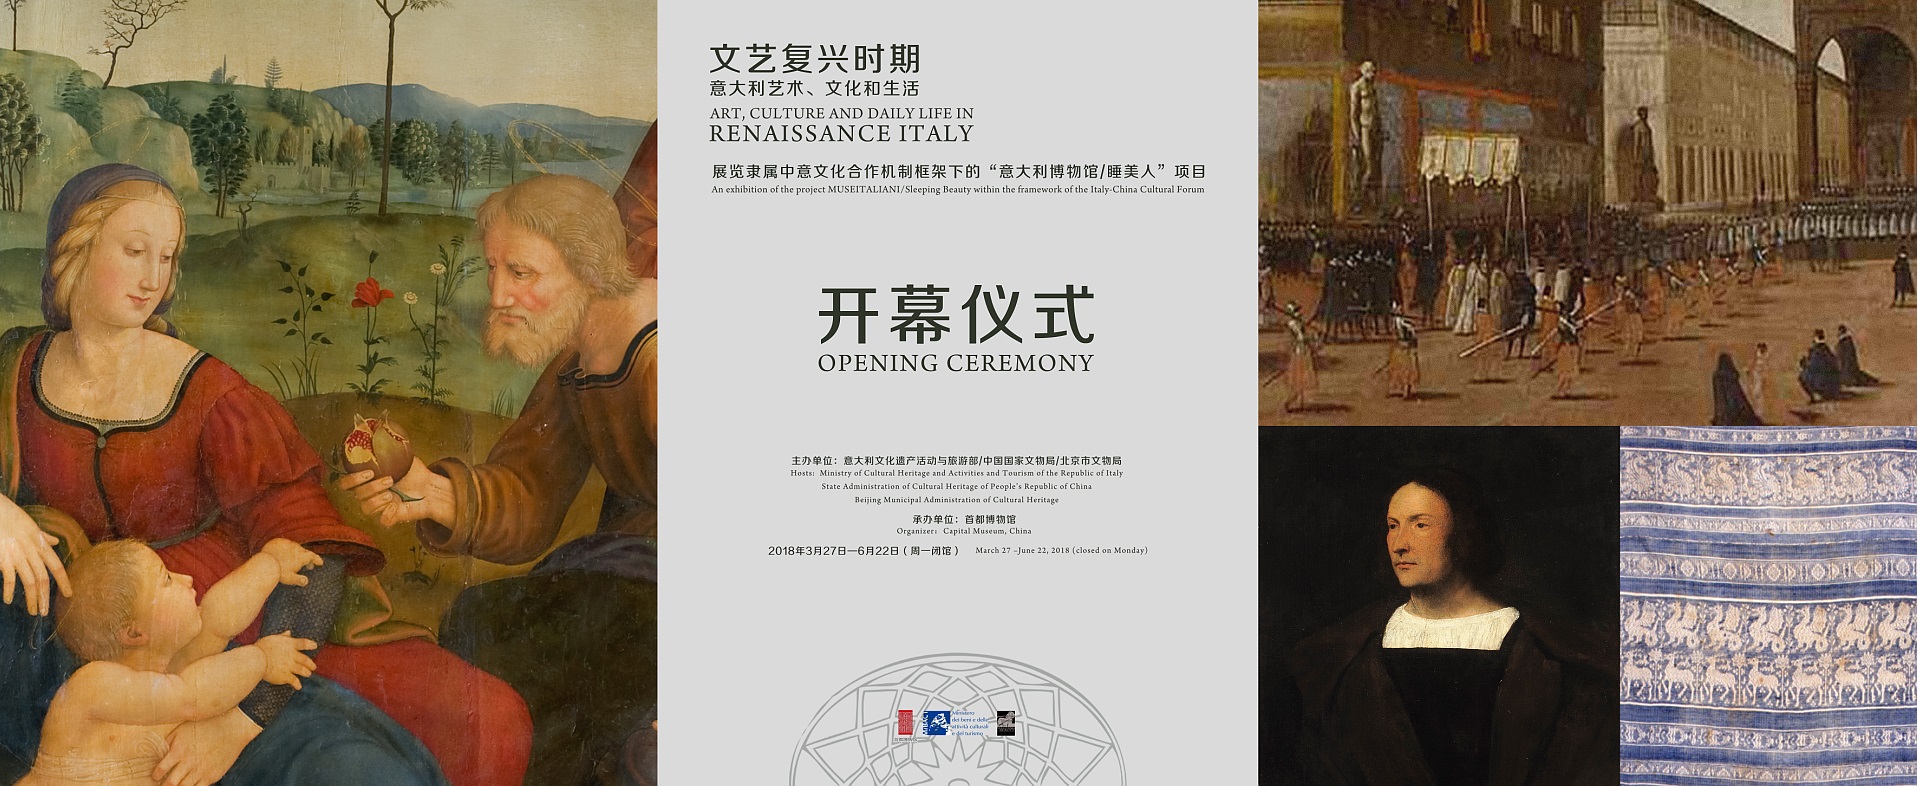 Opening Mostra Arte, cultura e vita quotidiana nel Rinascimento italiano